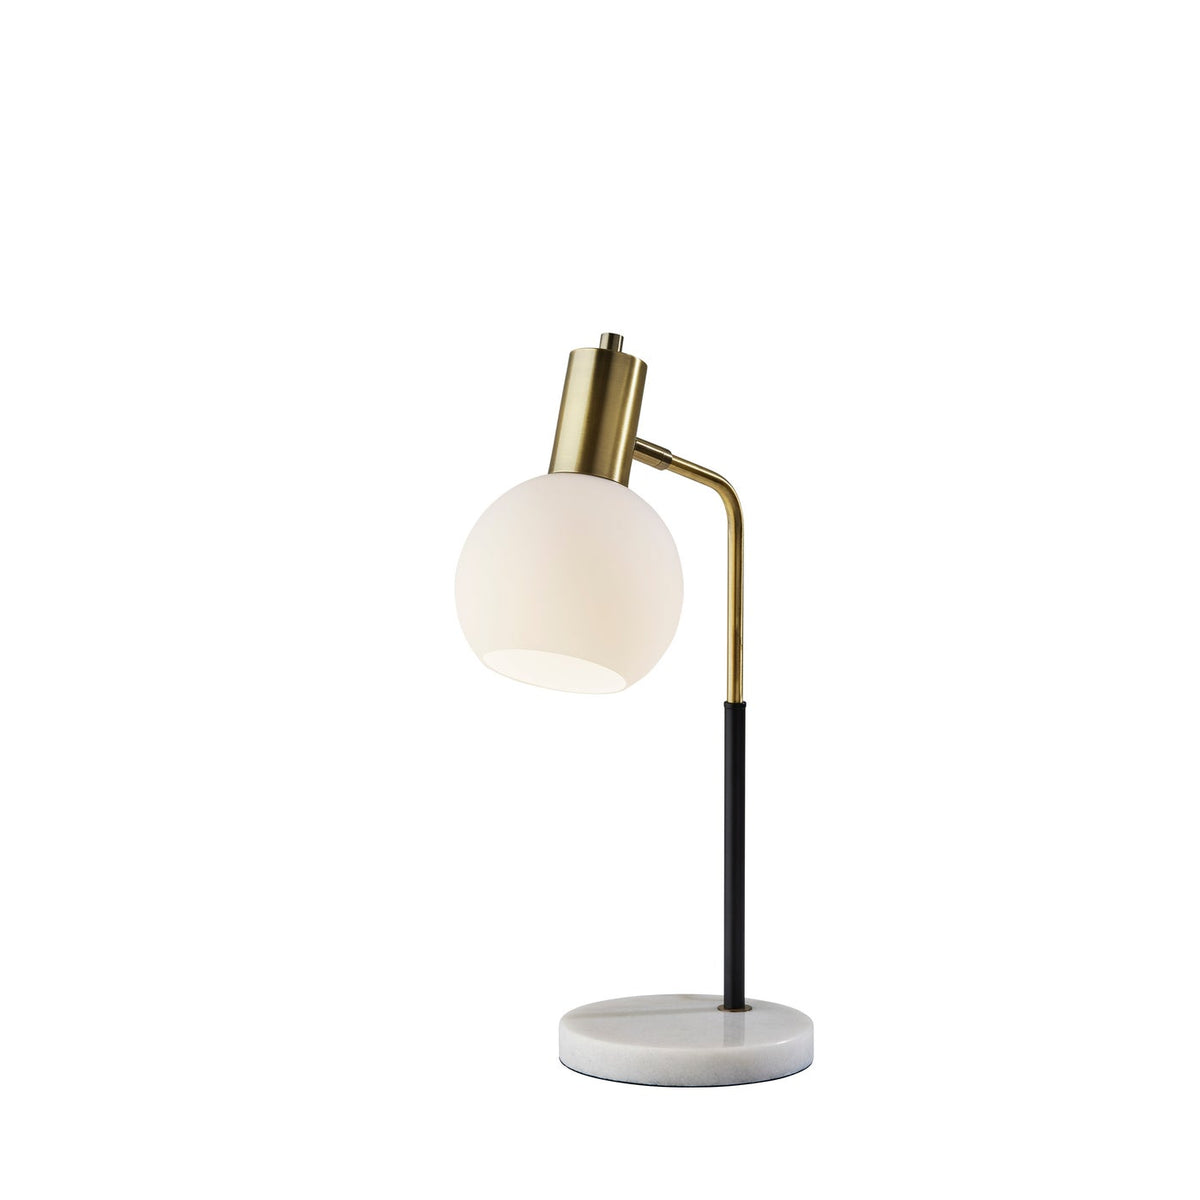 Adesso Home - 3578-21 - Desk Lamp - Corbin - Black & Antique Brass